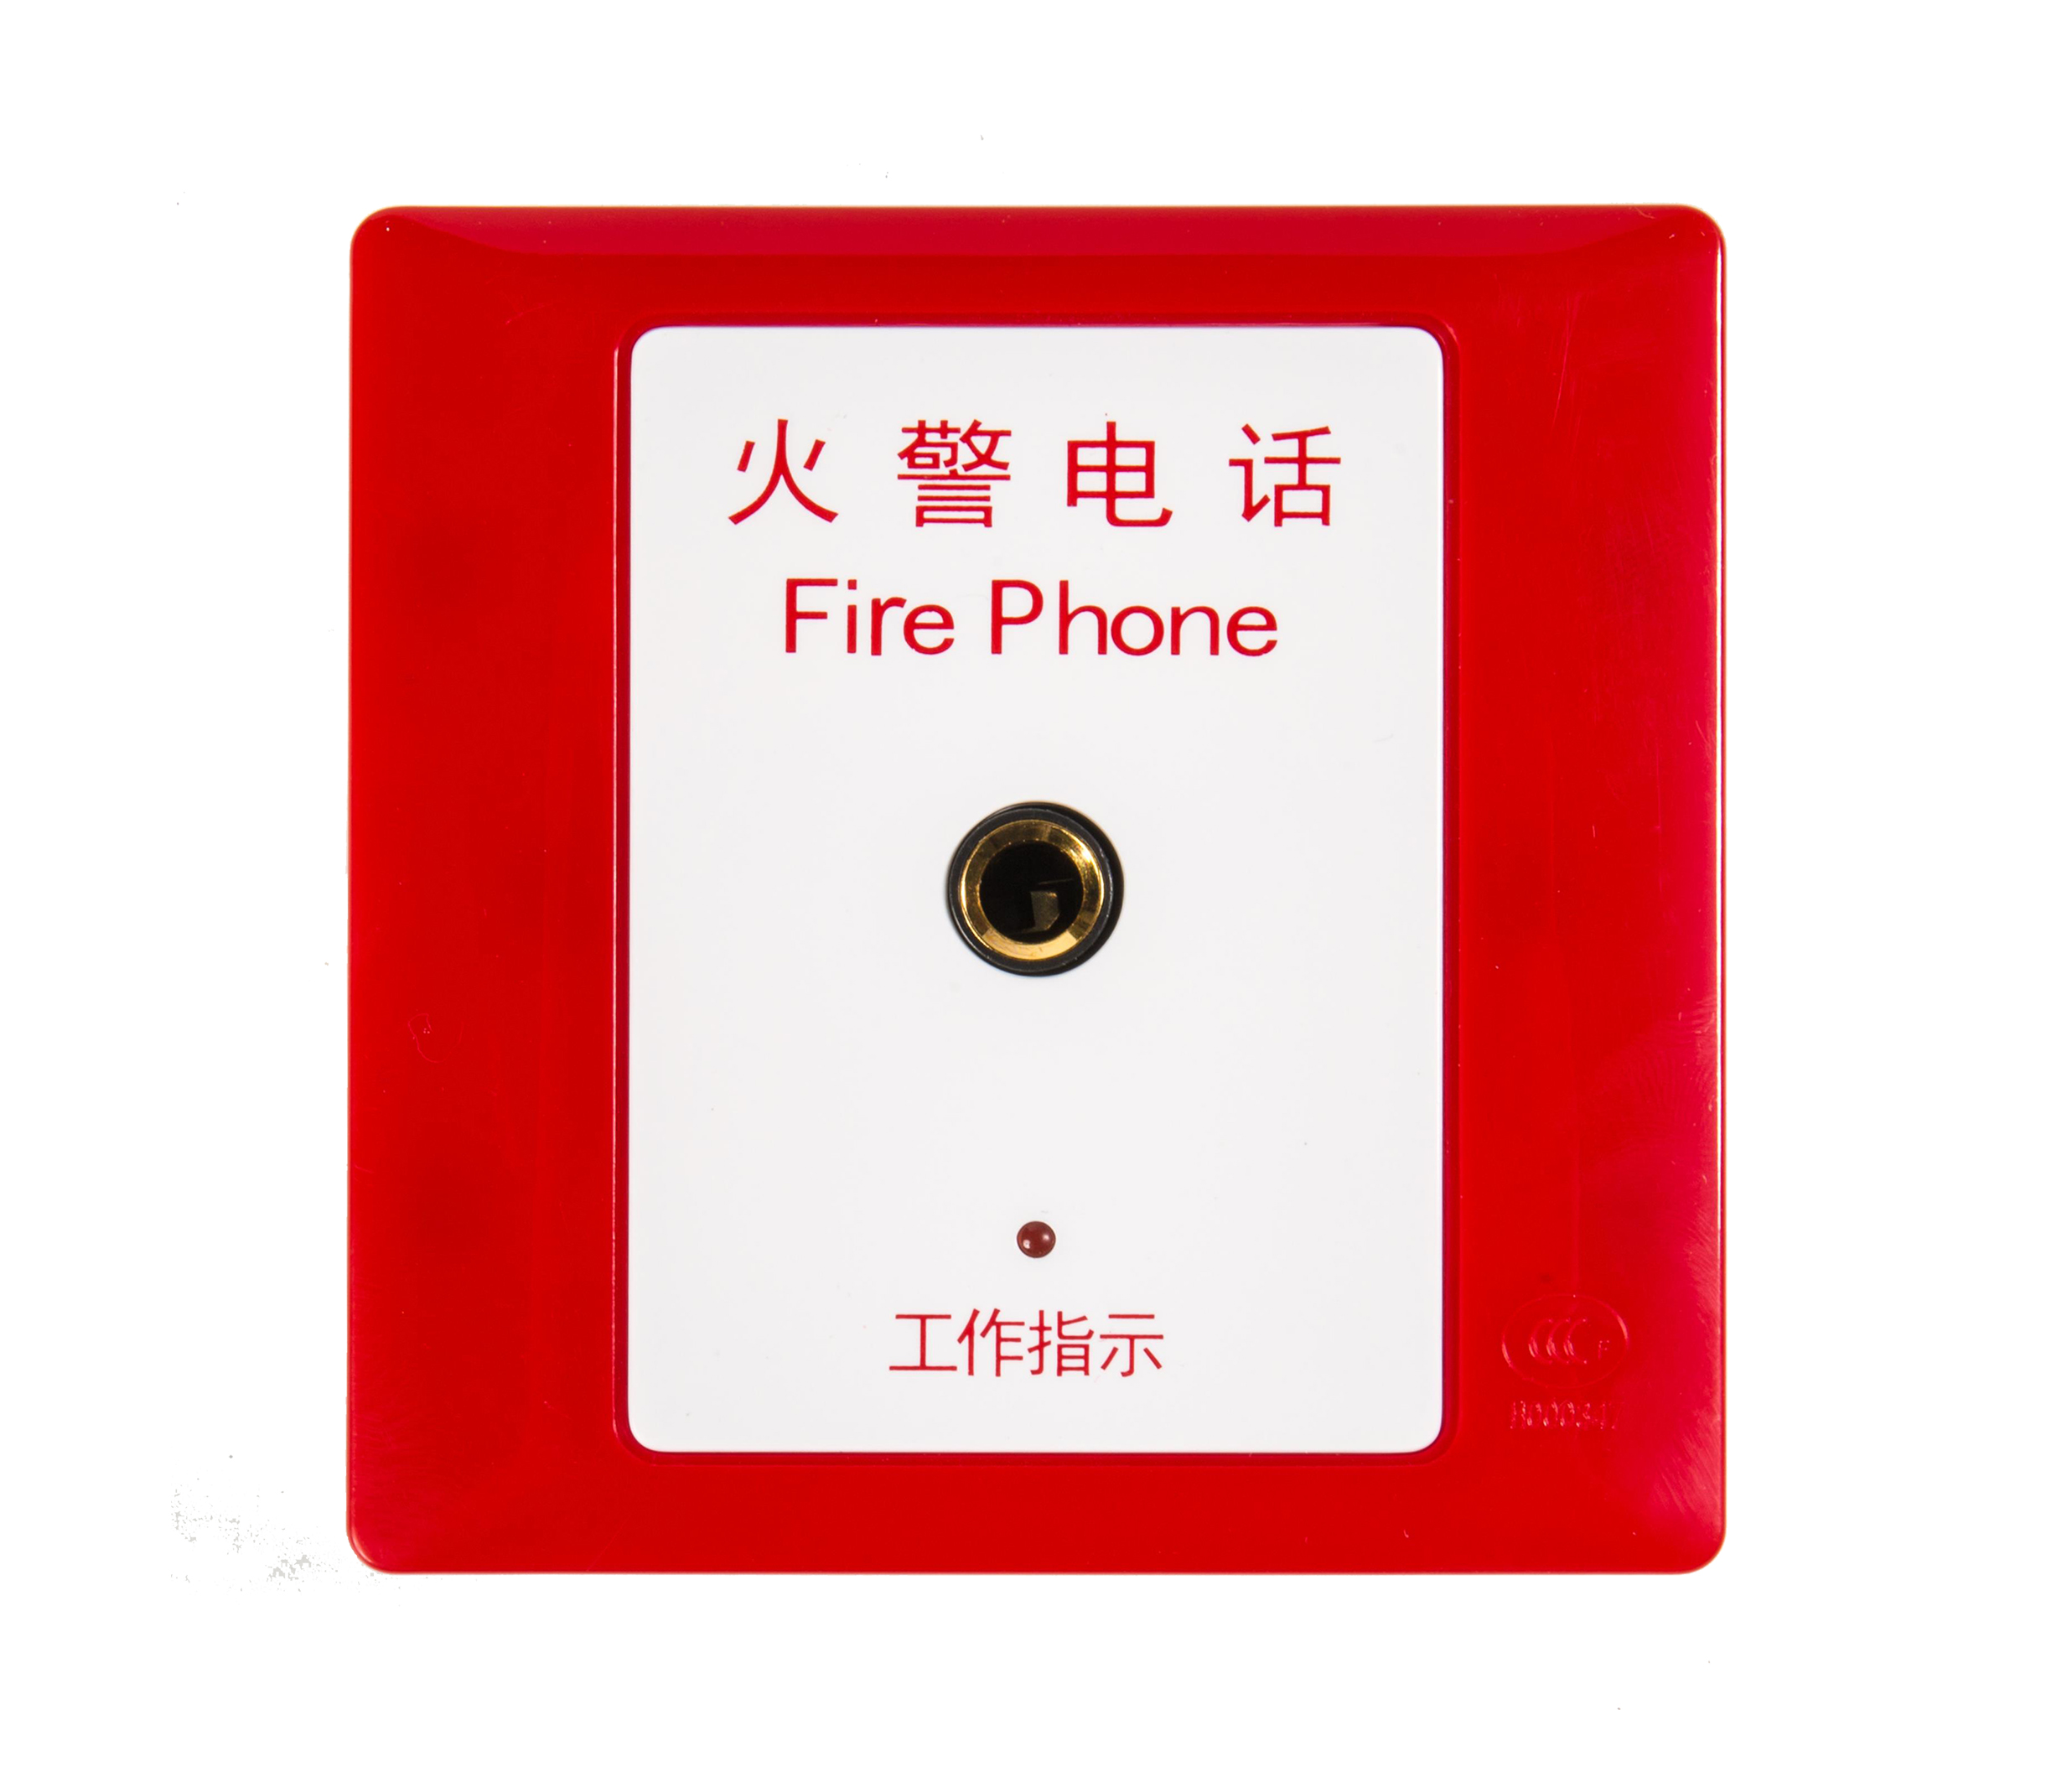 DH9273消防电话插孔